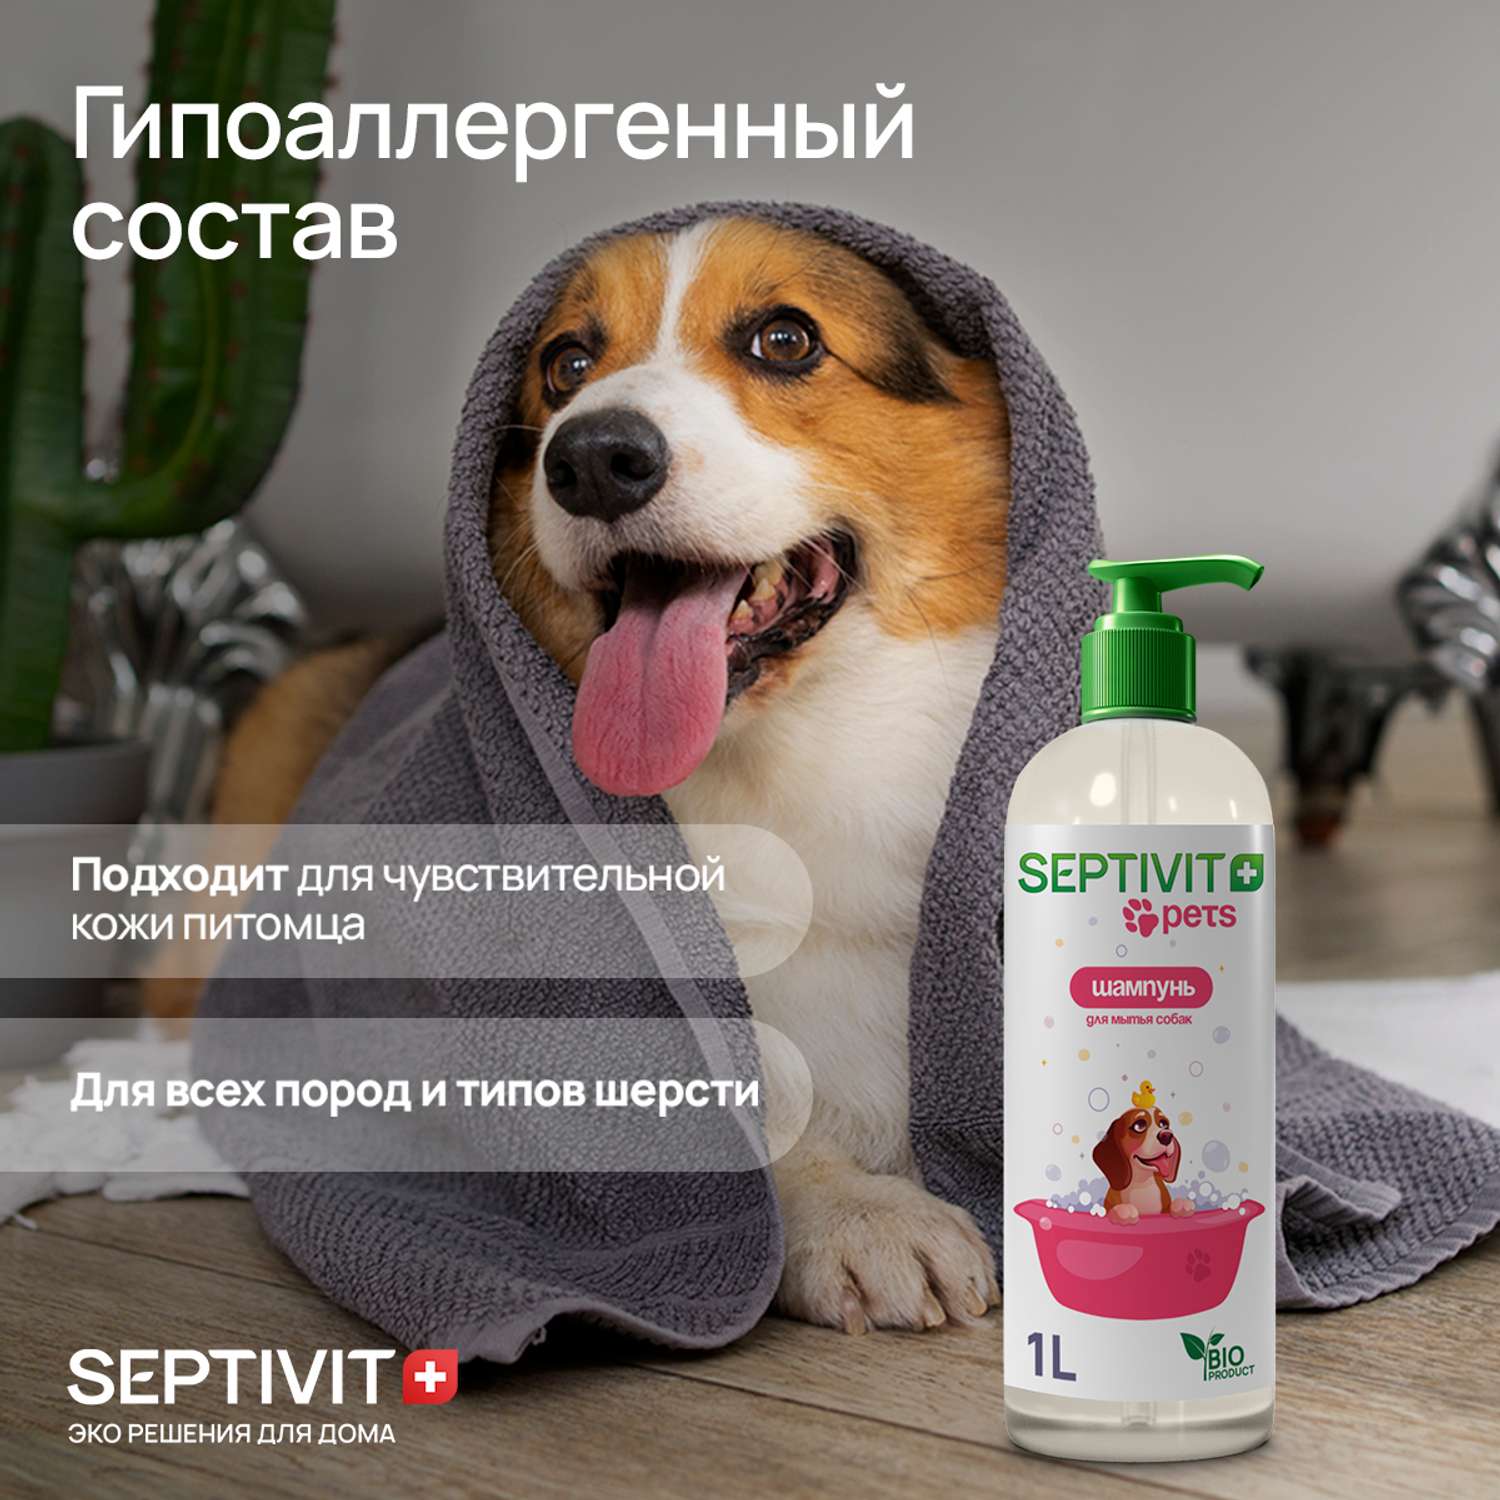 Шампунь для собак SEPTIVIT Premium 1 л - фото 3